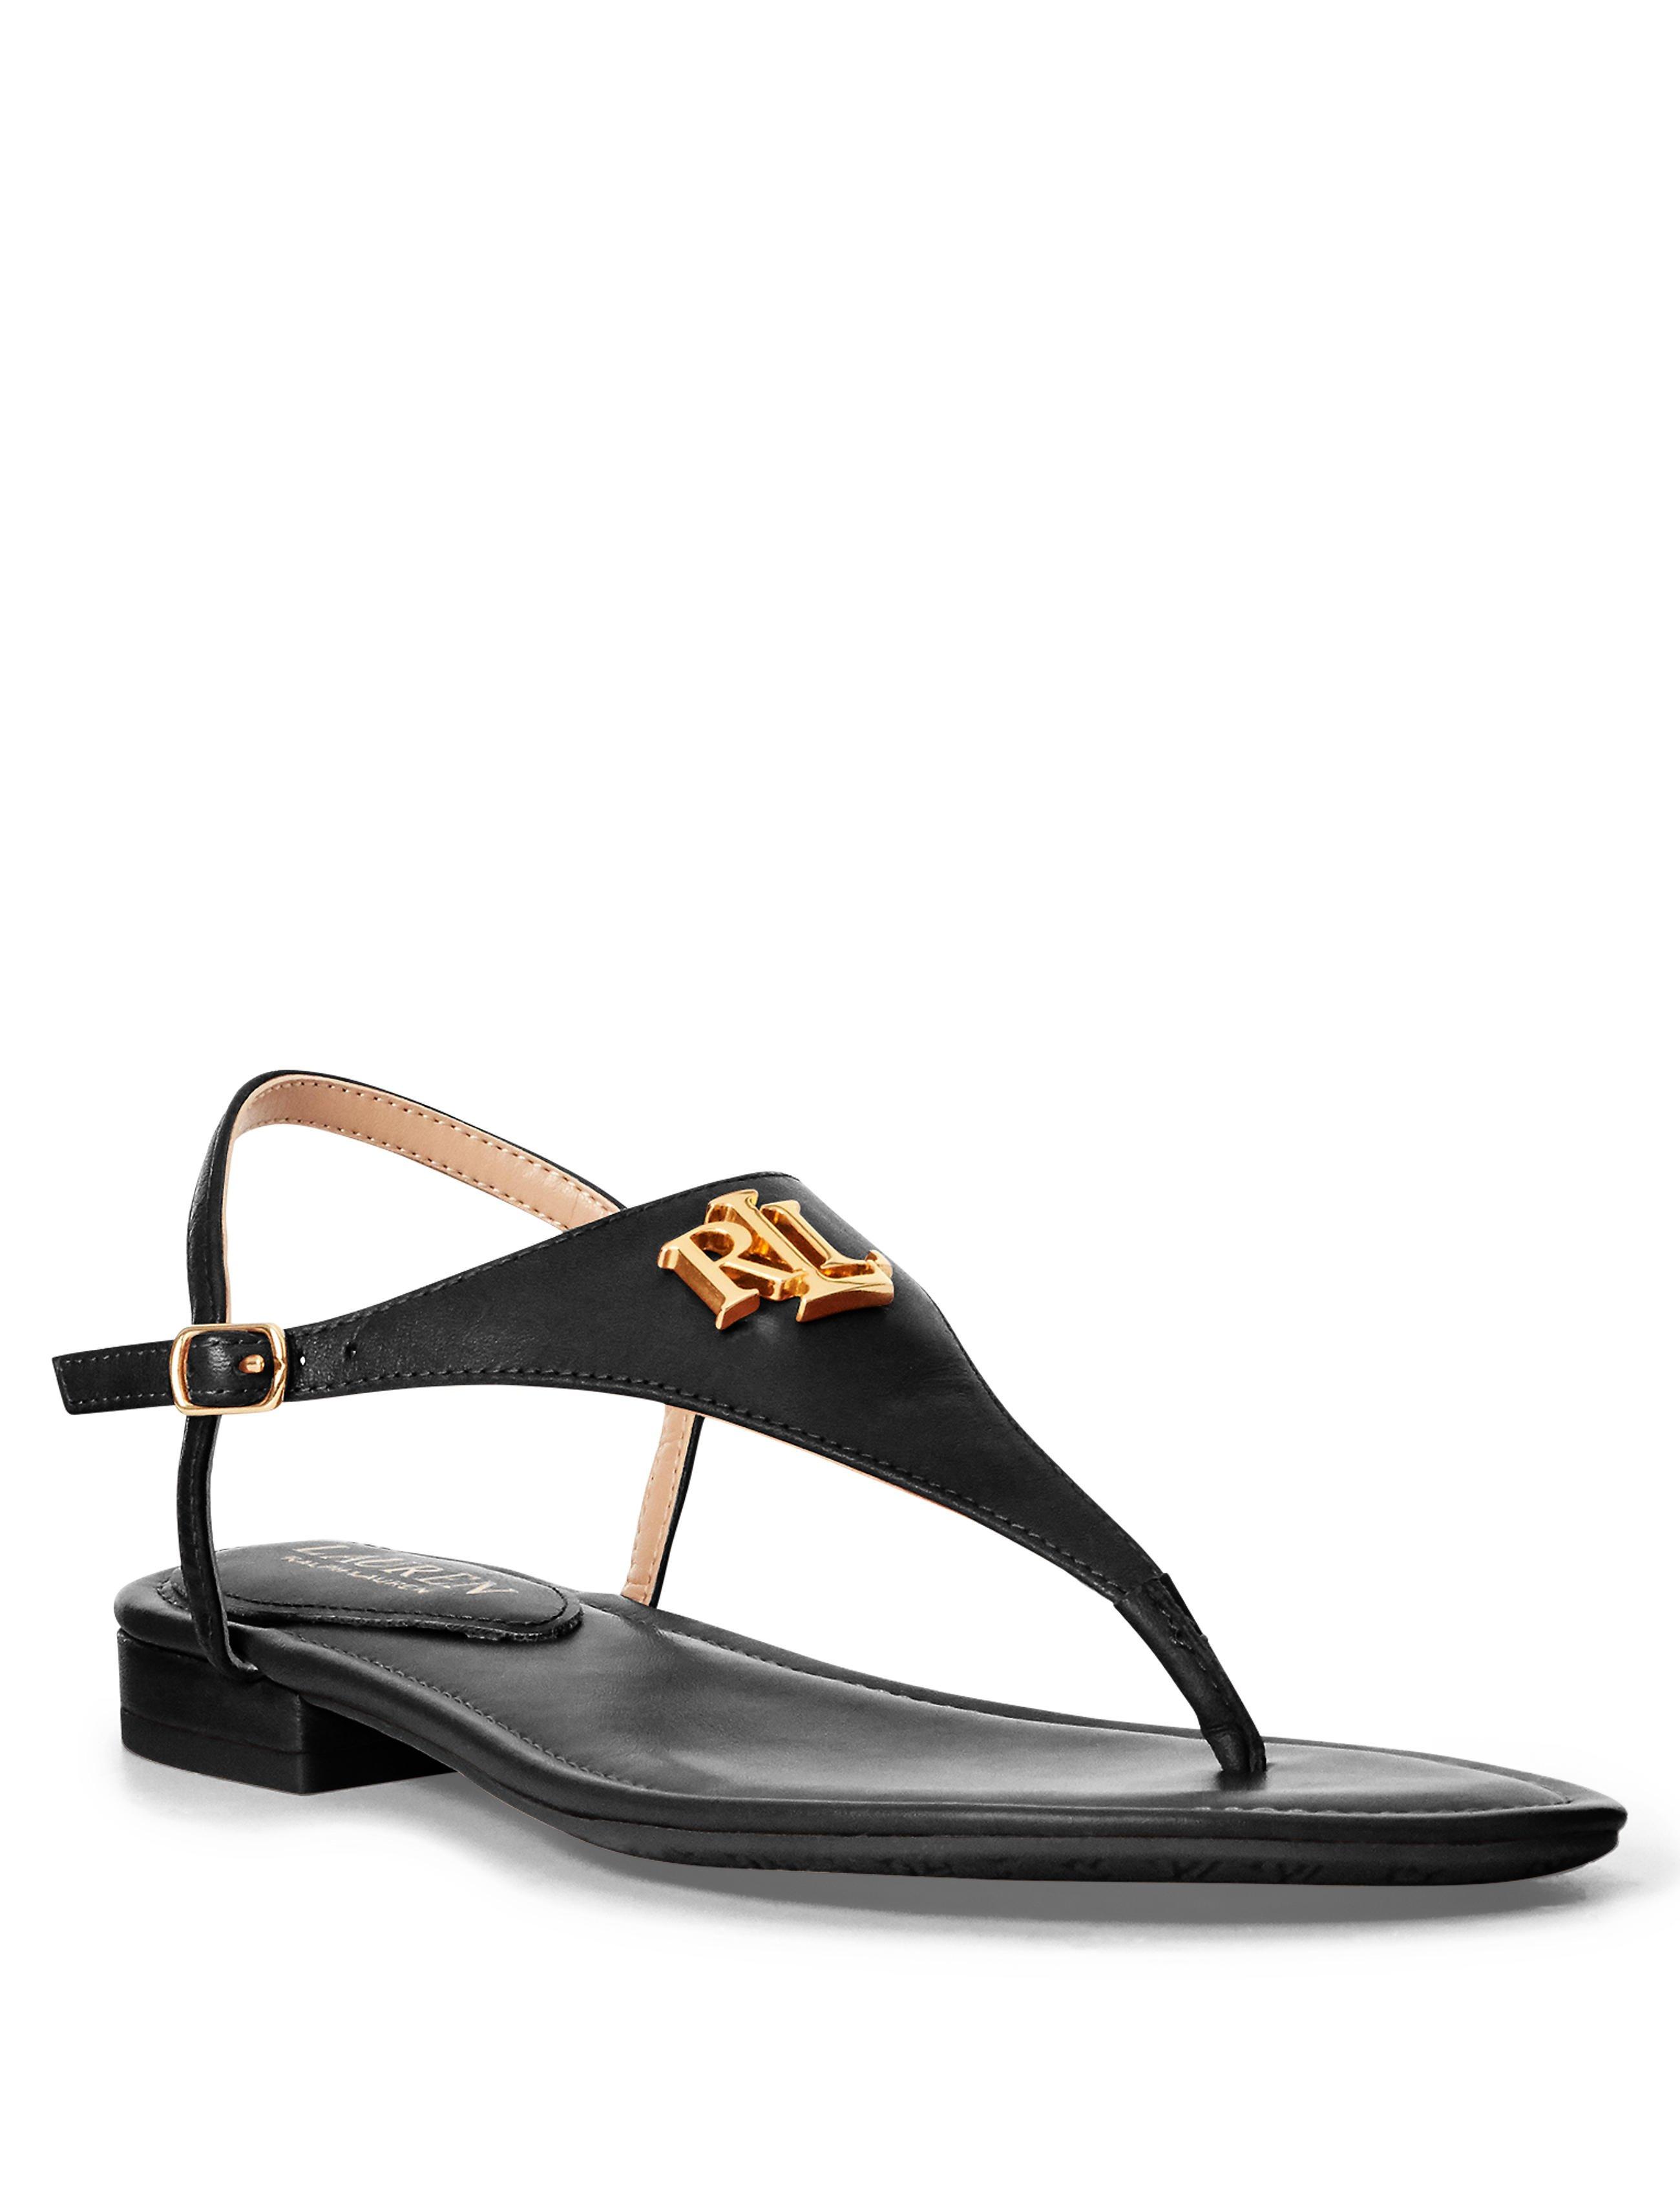 Thong sandals Lauren Ralph Lauren black